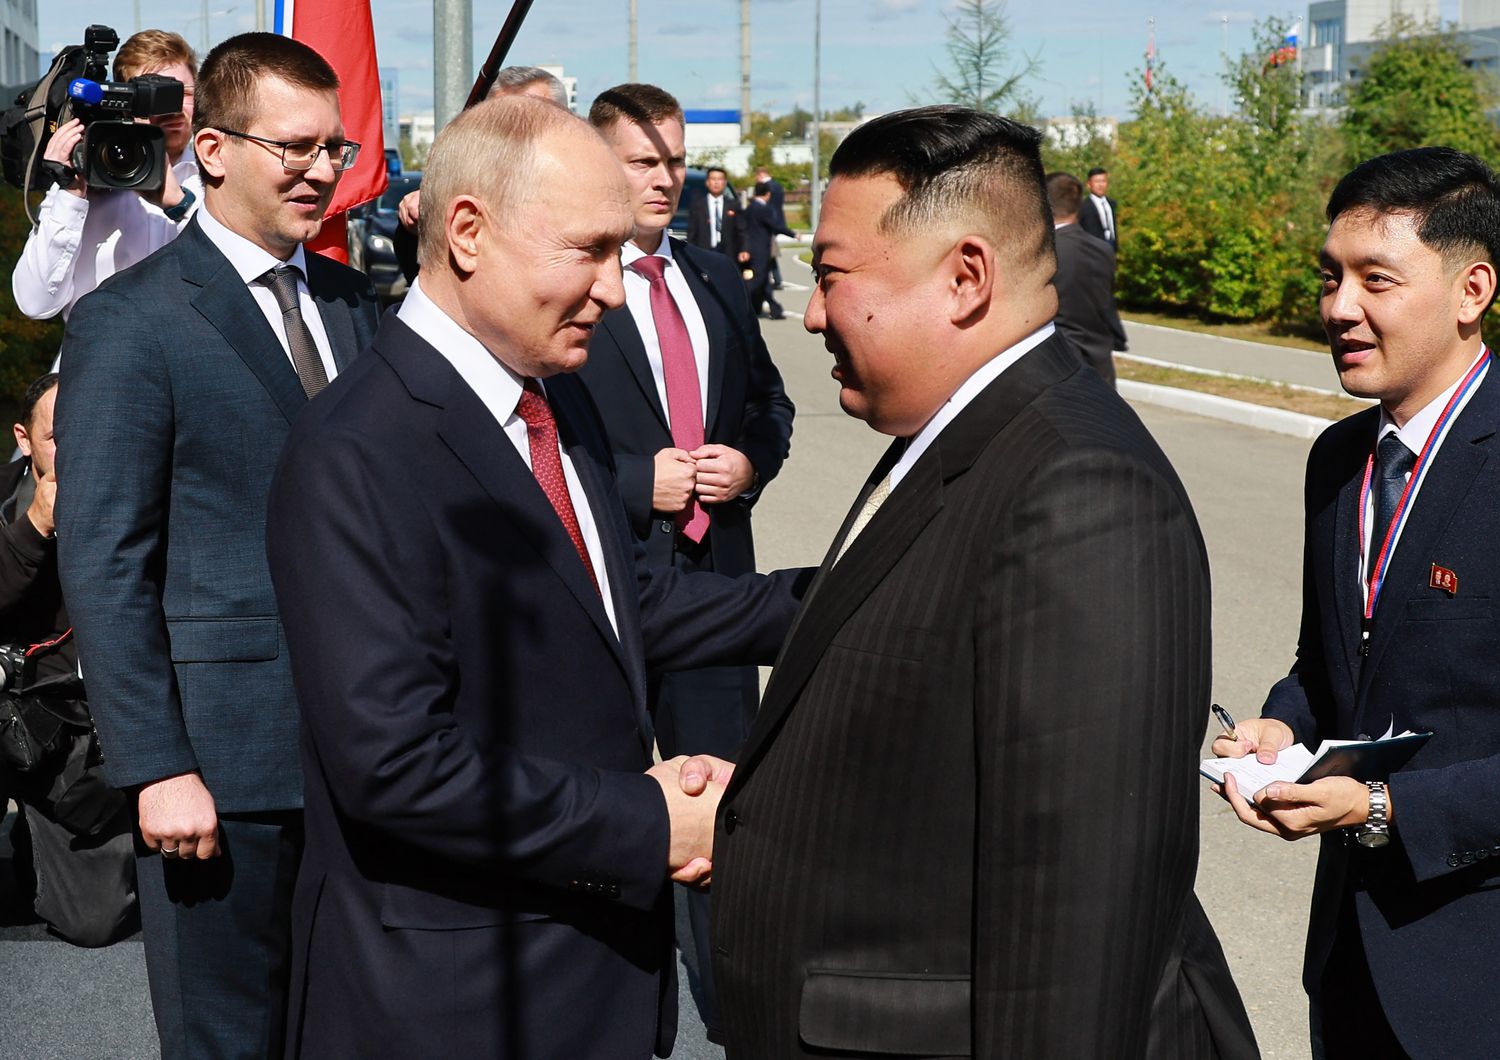 La stretta di mano tra il leader russo Putin e quello nordcoreano Kim&nbsp;